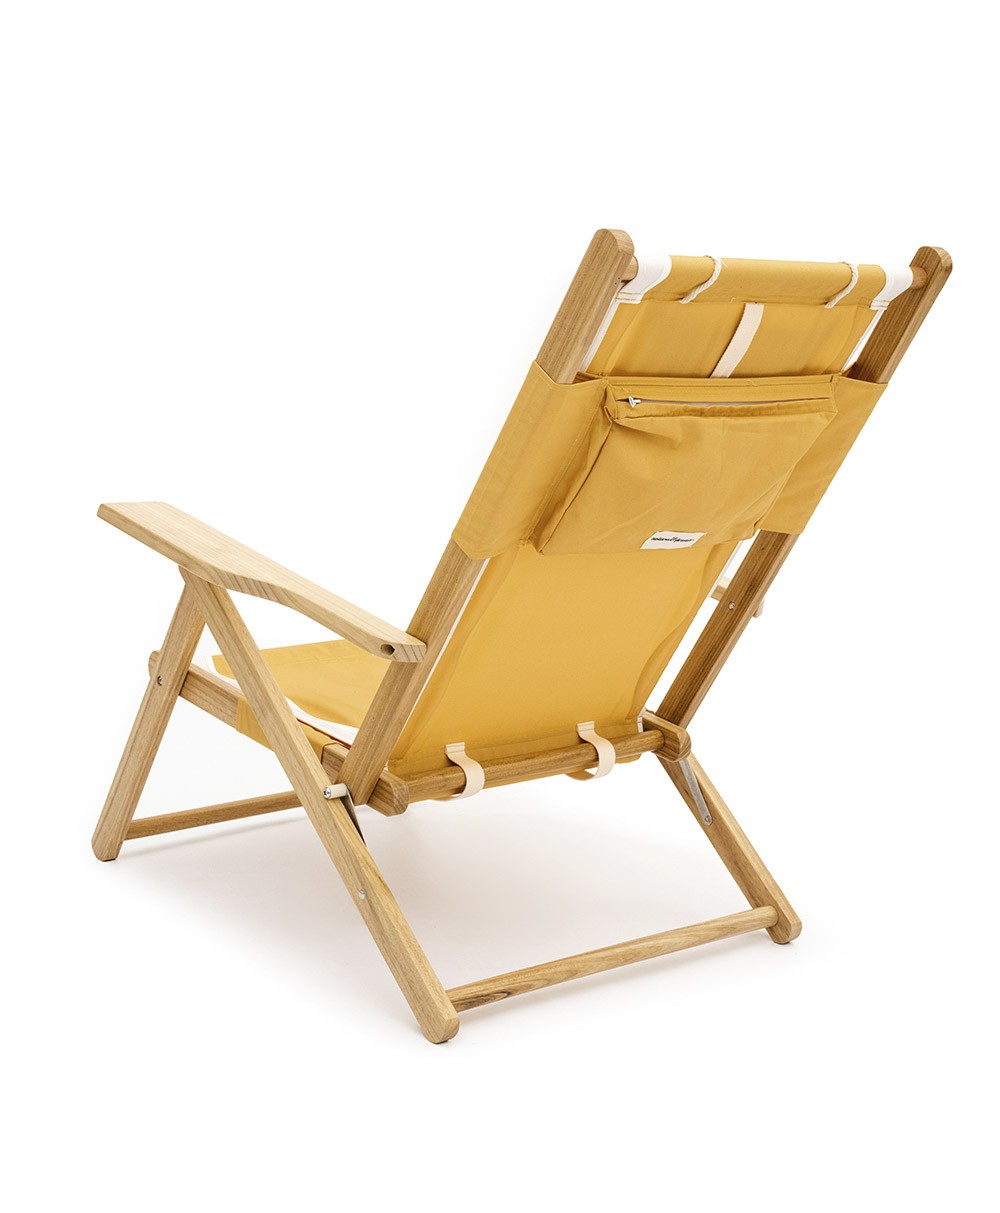 Hier abgebildet ist der The Tommy Chair in Rivie Mimosa von Business & Pleasure Co. – im RAUM concept store